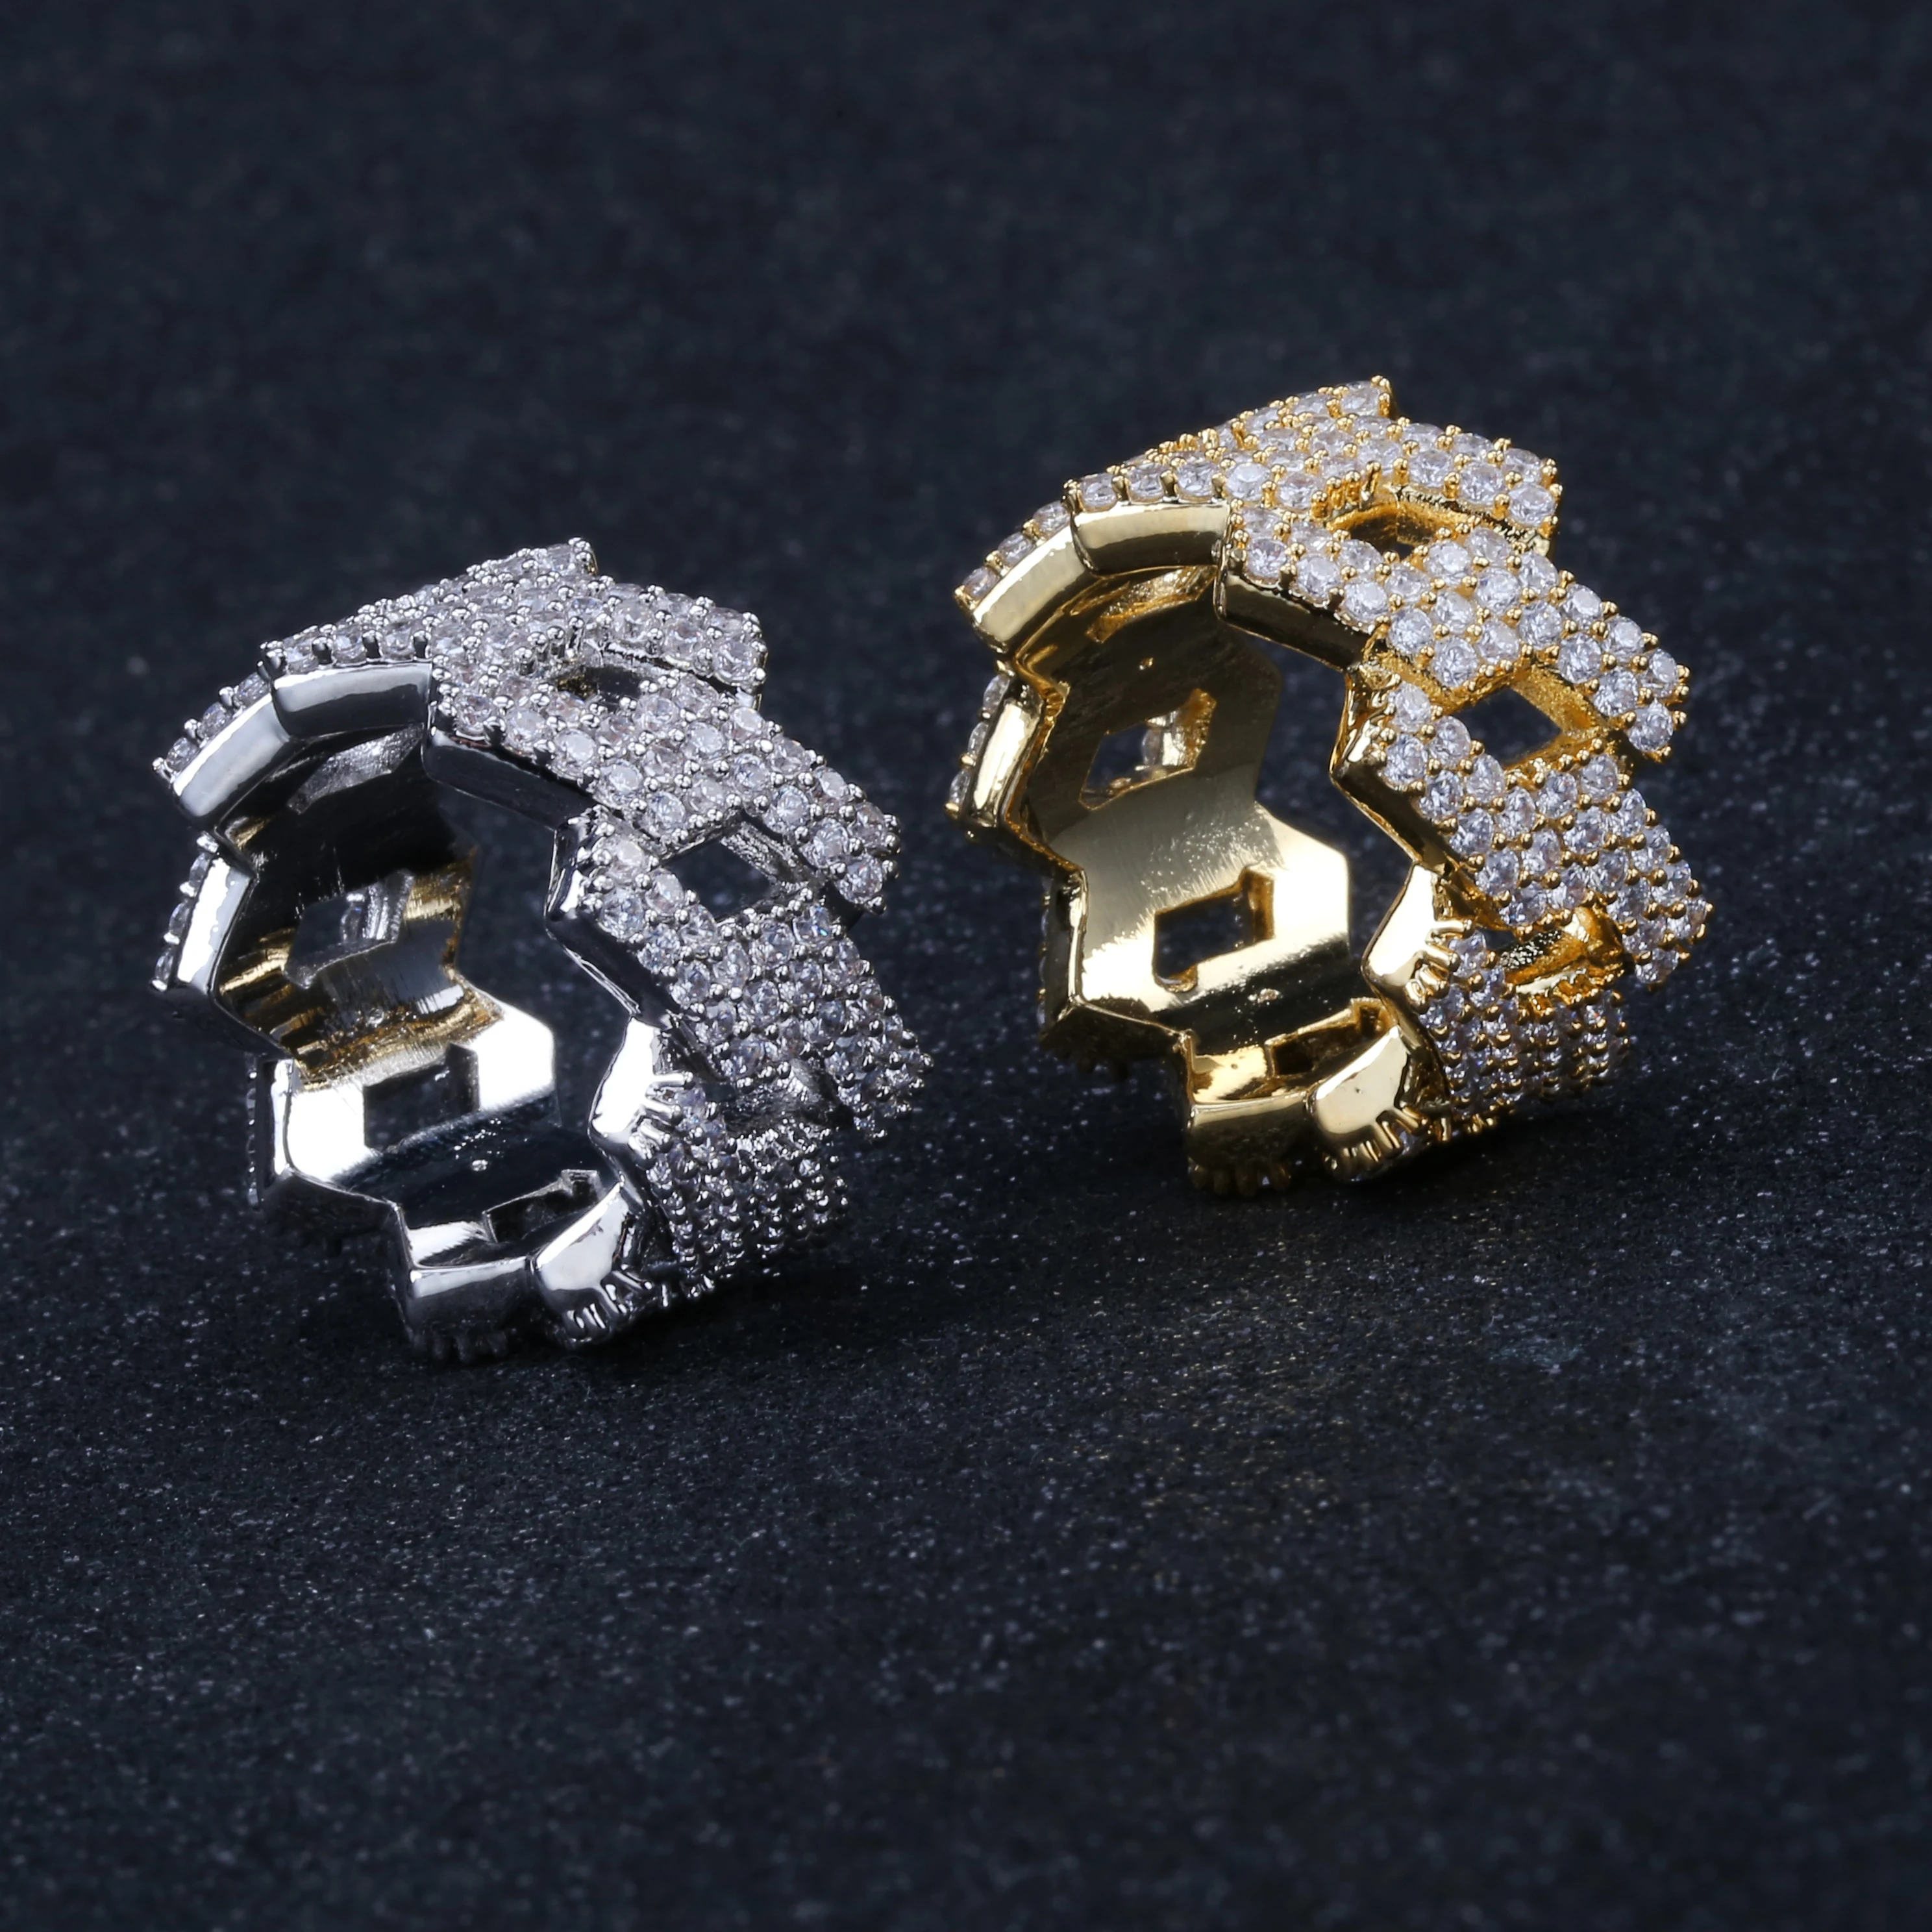 Хип-хоп со льдом индивидуализированное кольцо Мужские крапановая закрепка цвета: золотистый, серебристый цвет, украшения побрякушки кольцо с кубическим цирконием ювелирные изделия